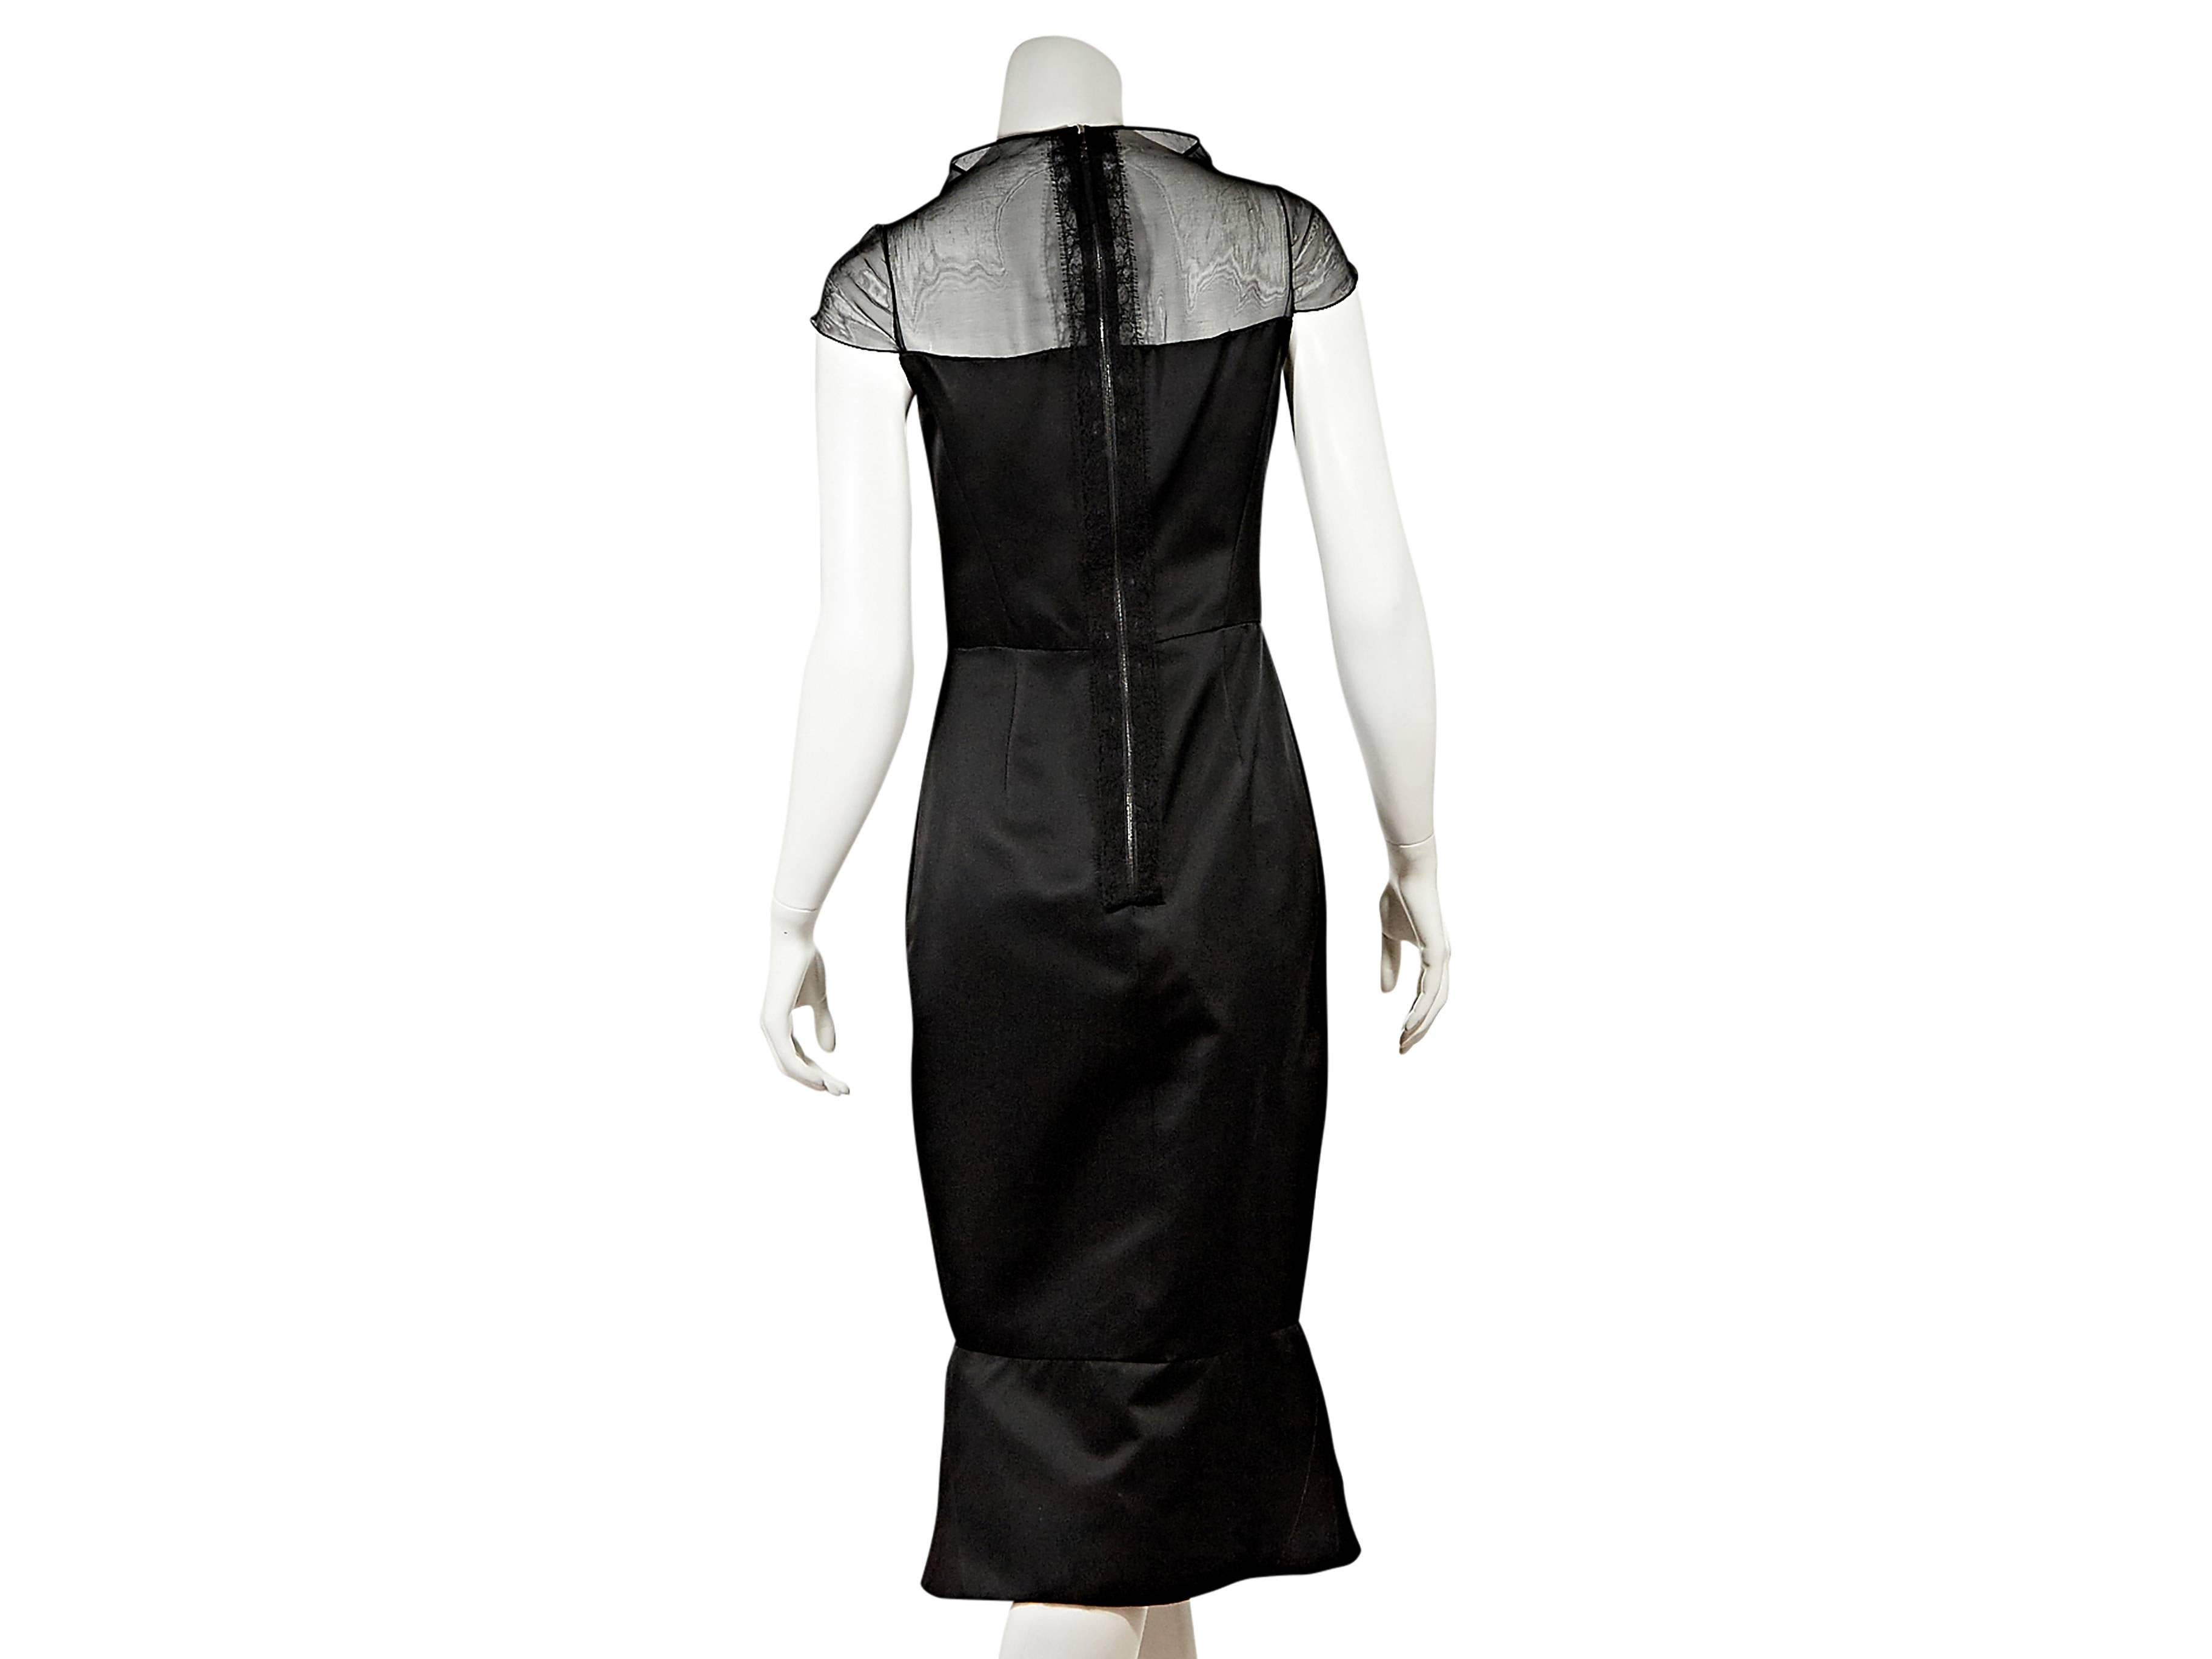 Black silk mermaid-hem dress by J. Mendel.  Wide mockneck.  Short sleeves.  Seaming creates a flattering silhouette.  Exposed back zip closure.